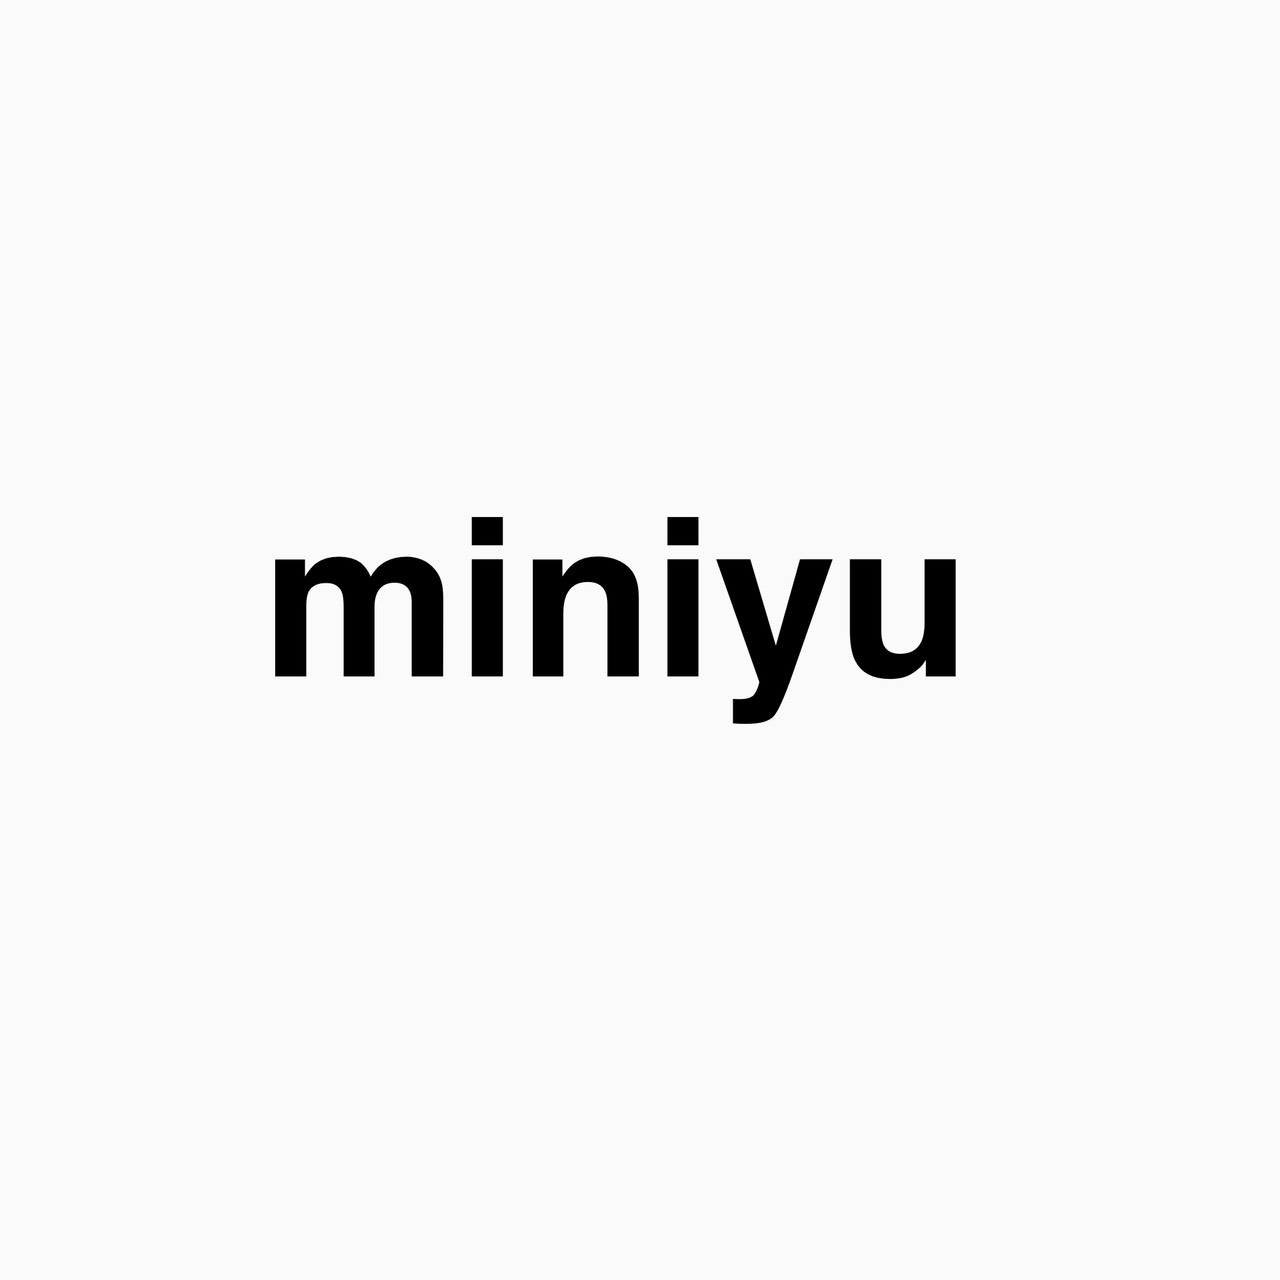 『miniyu』ZOZOTOWNショップイメージ